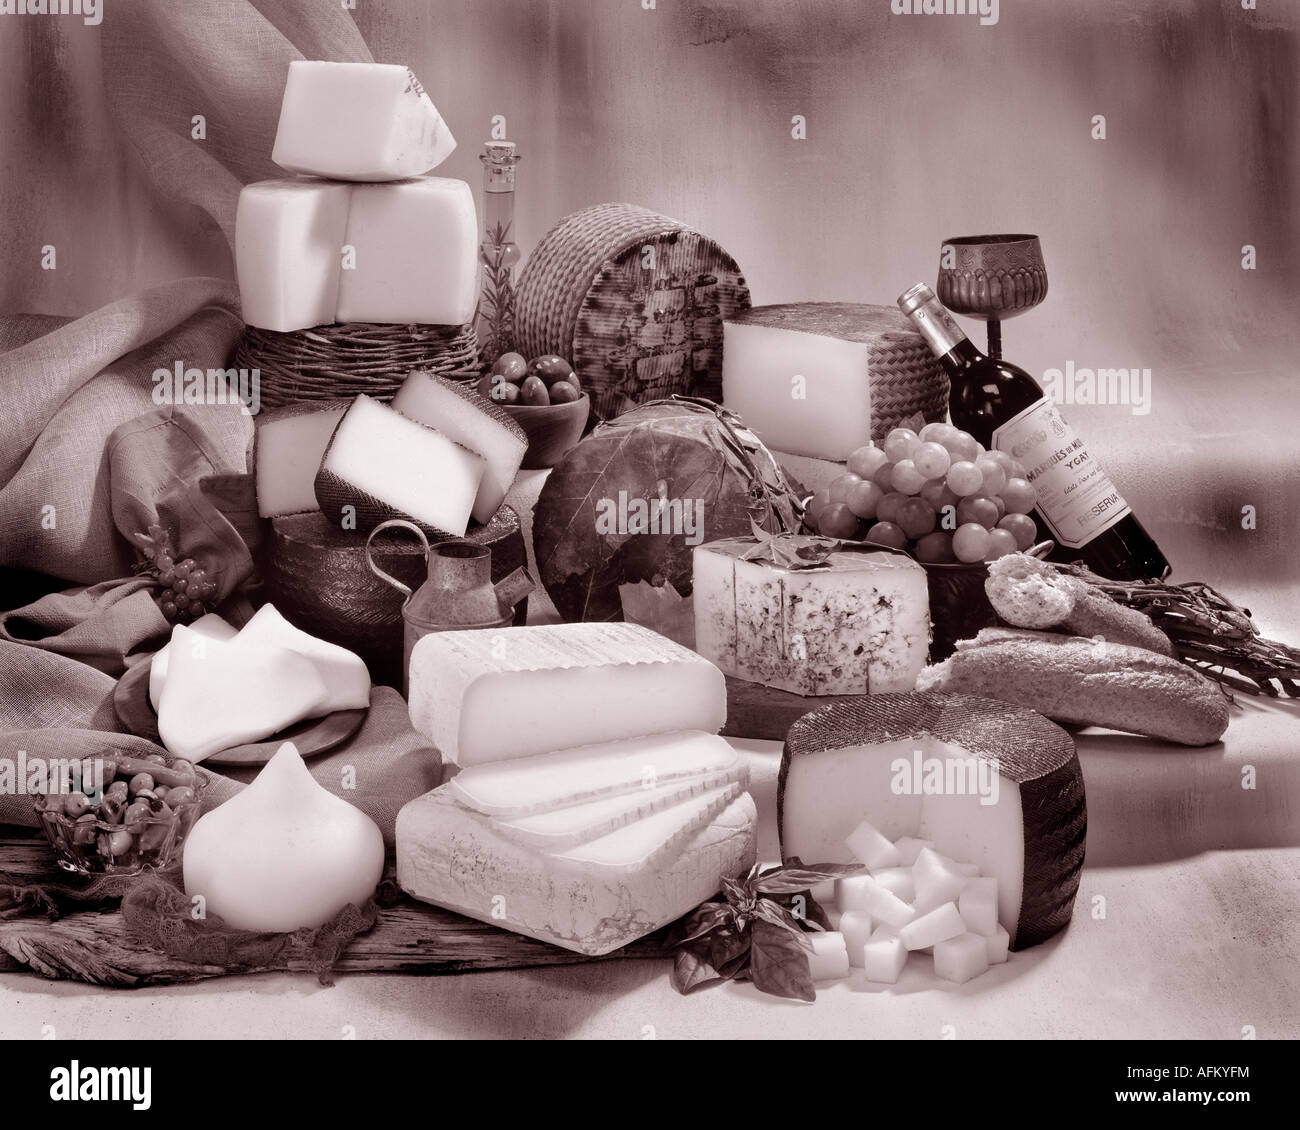 Dans le groupe des fromages espagnols photographie sépia tonique sur fond marbré. Format horizontal, studio d'examen. Image classique. Banque D'Images